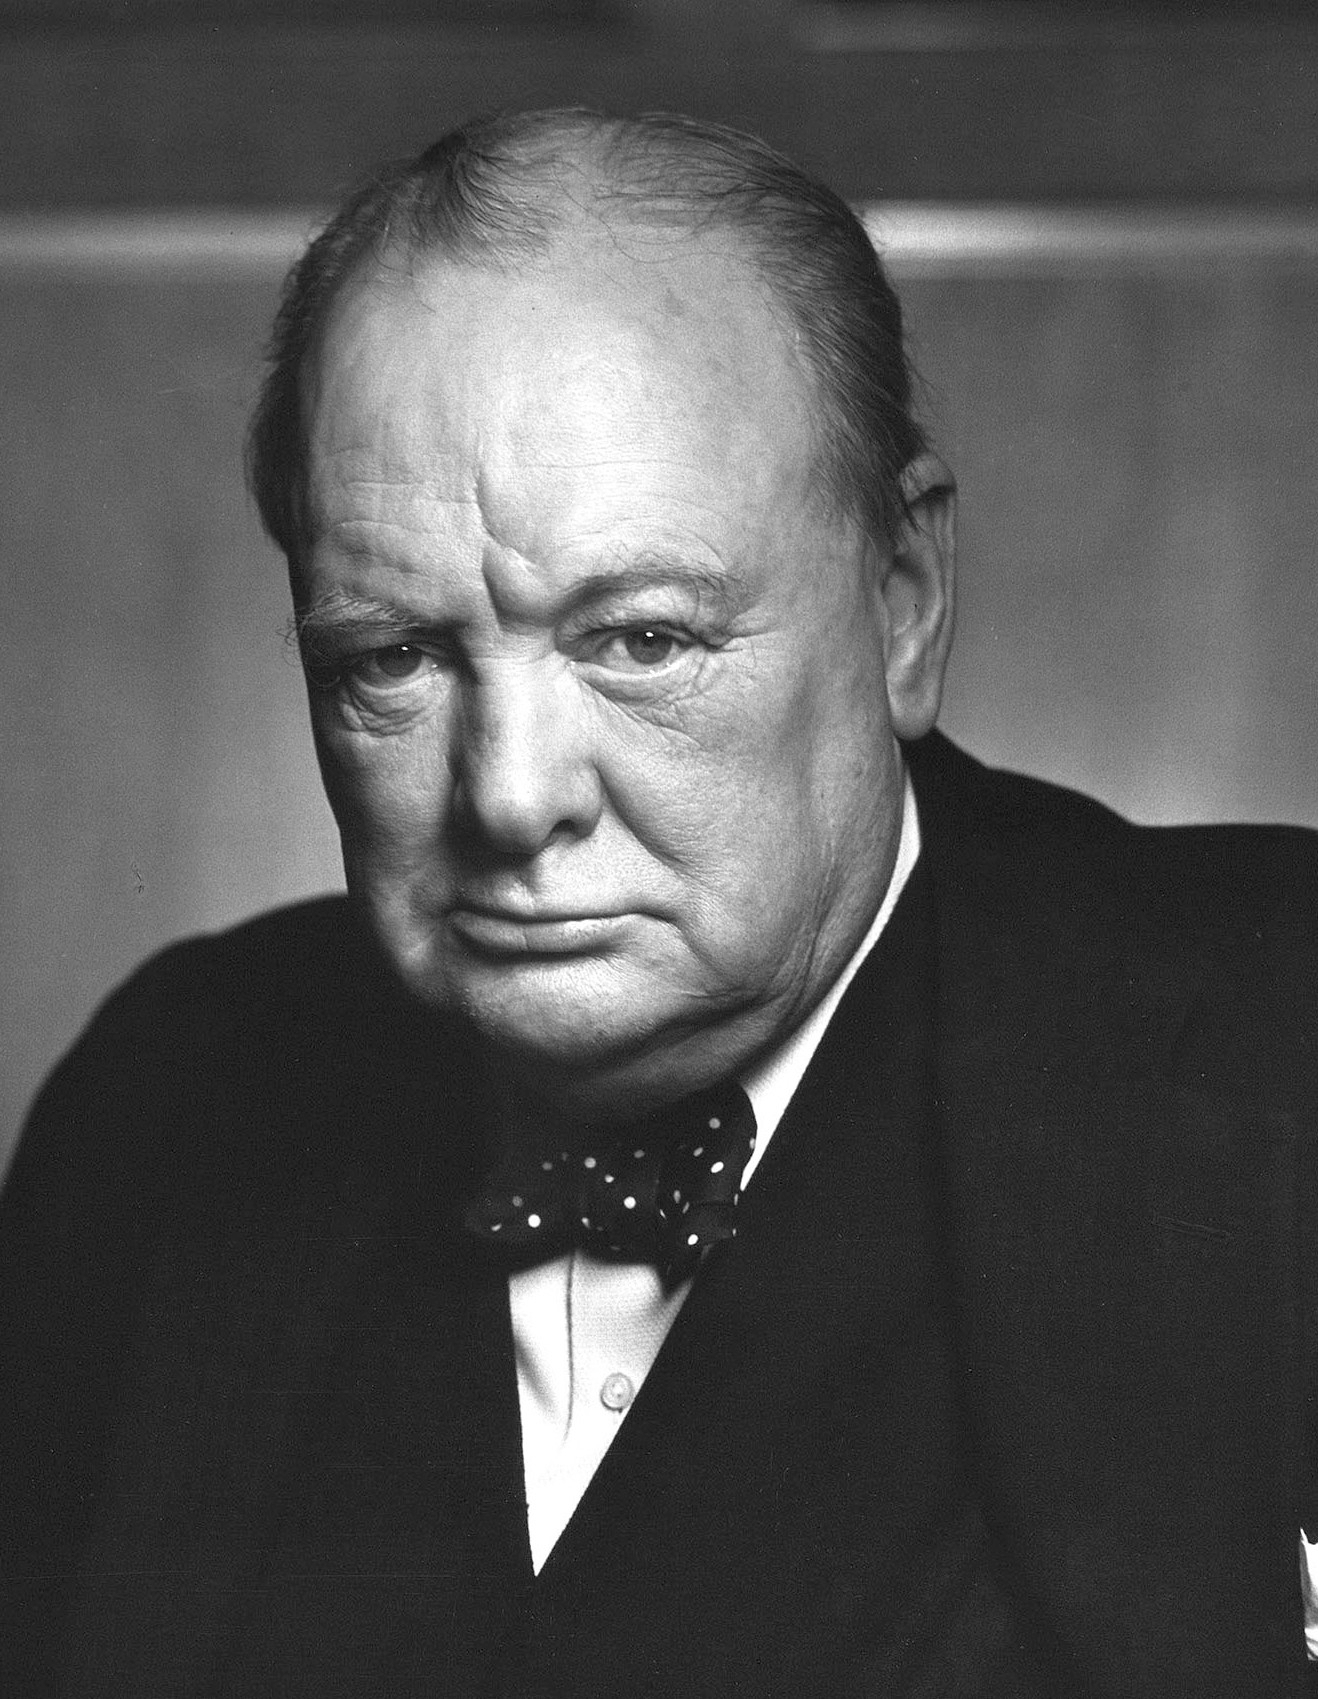 auteur Winston Churchill de la citation Victoire à tout prix, victoire malgré toute terreur, victoire aussi longue et dure la route peut être; Car sans victoire, il n'y a pas de survie.